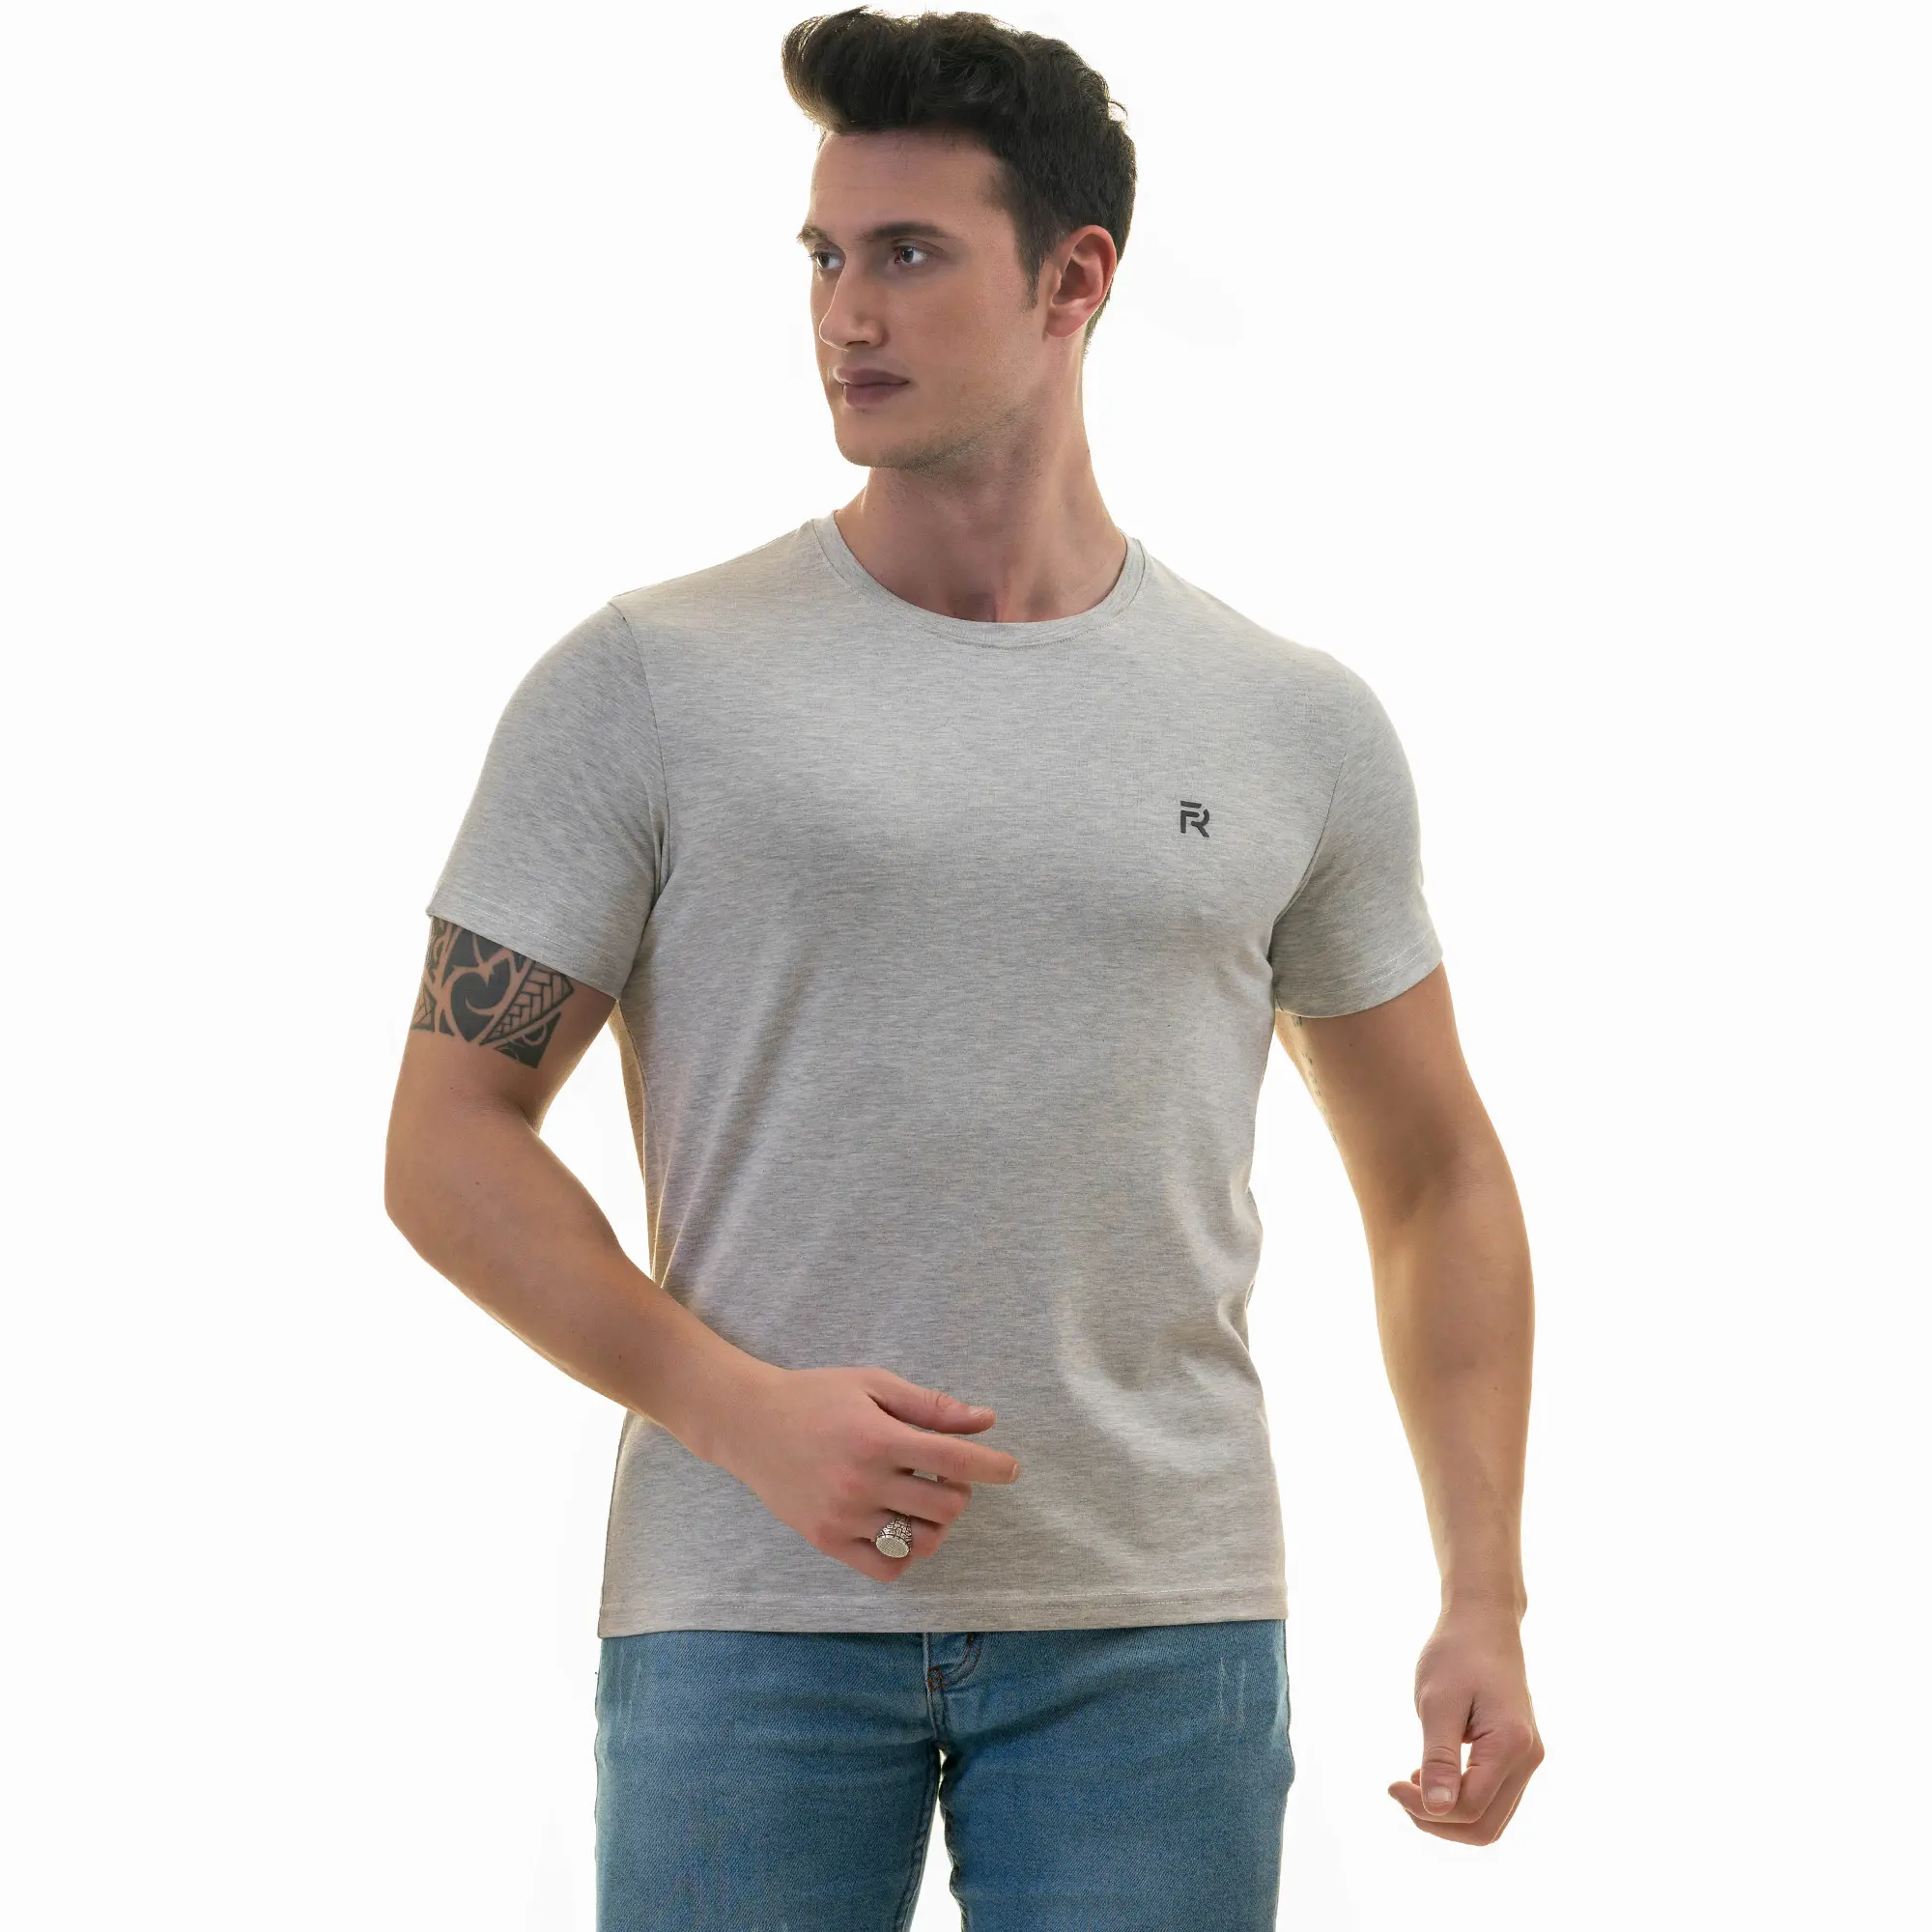 Personalizado Atacado Boa Qualidade Em Massa Plain 95 Algodão 5% lyra Comprar Contraste TrimT Camisas Feitas na Turquia